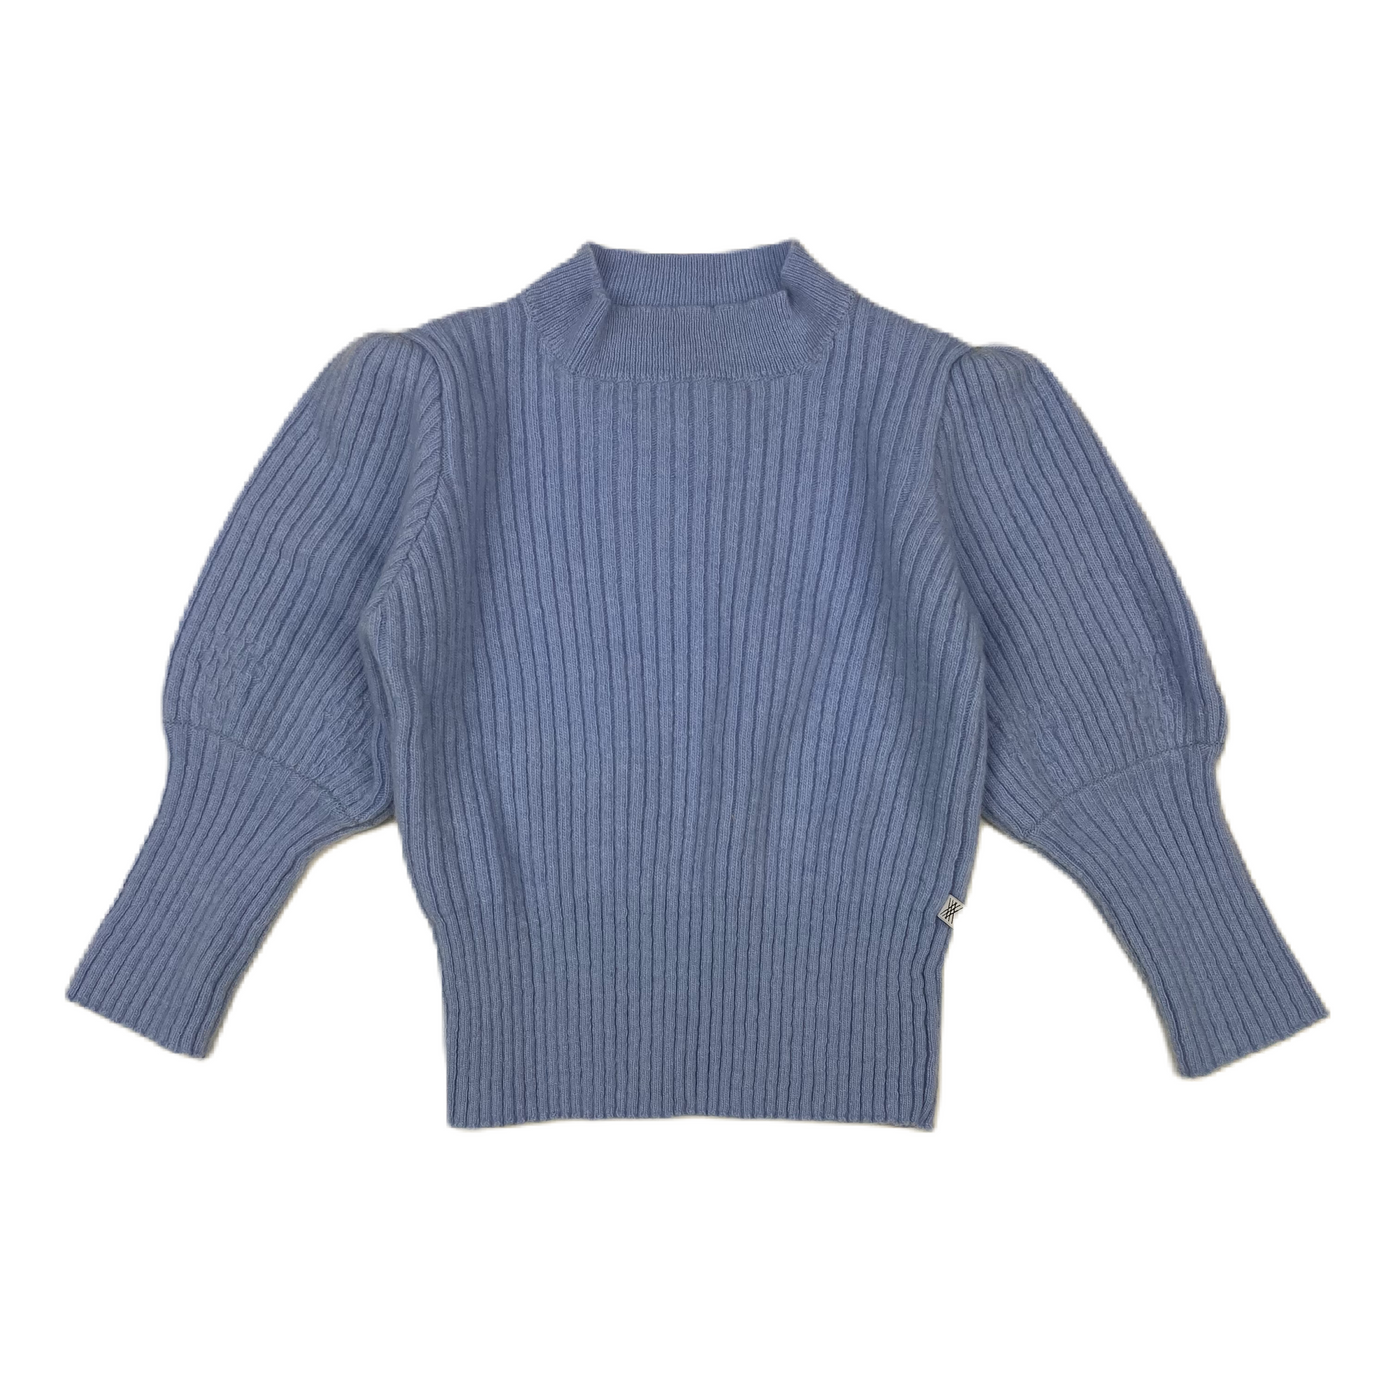 Repose Ams. - Puffy sweater lilac blueish 2y, 6y & 8y